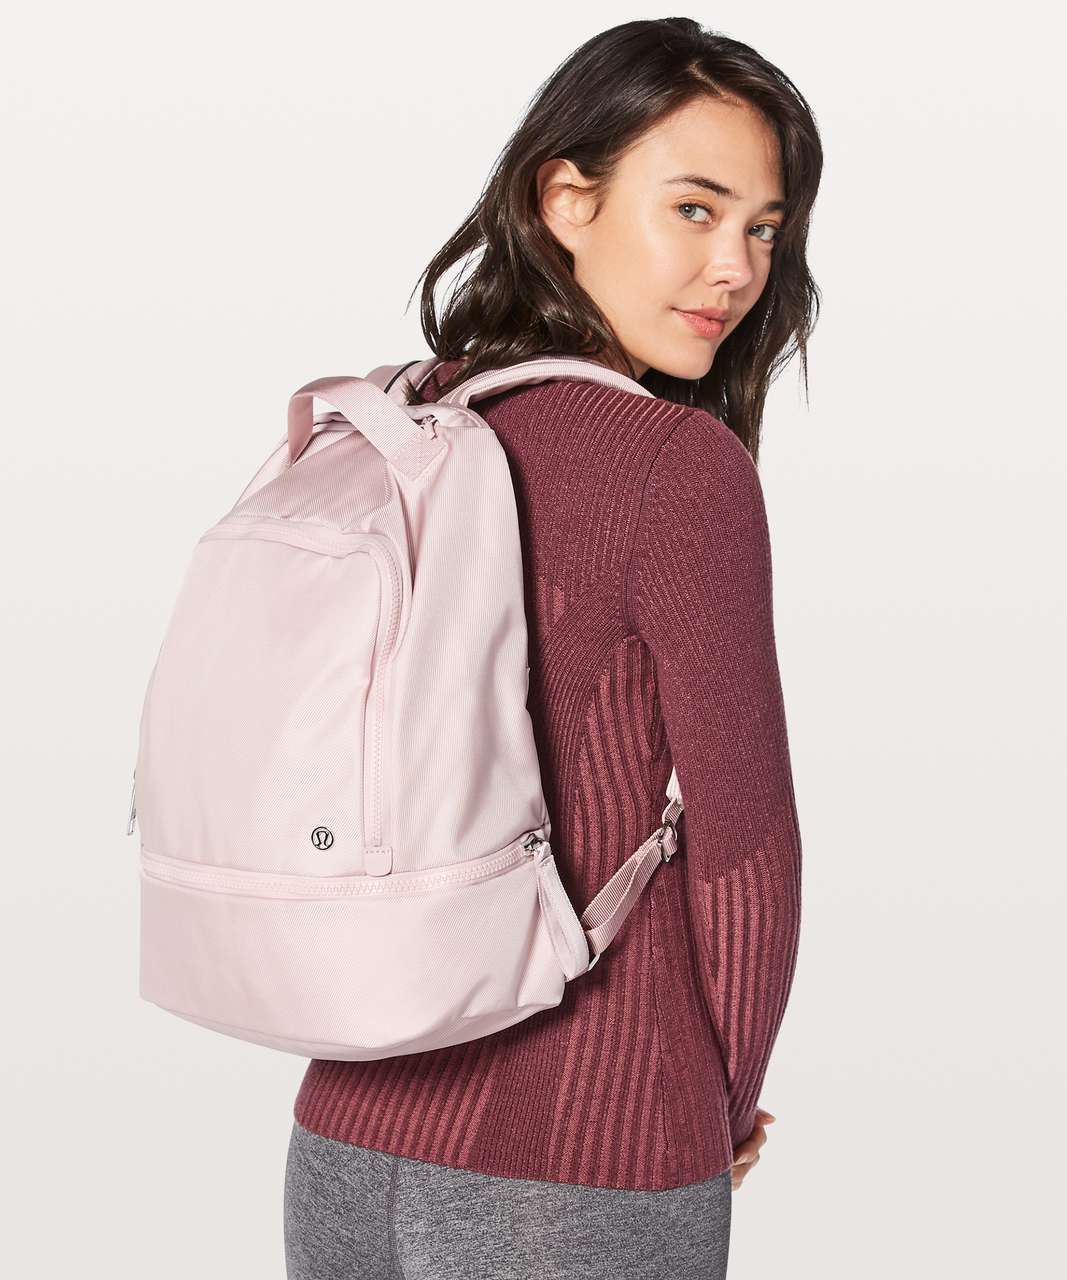 Lululemon City Adventurer Backpack *17L - Misty Pink (First Release)